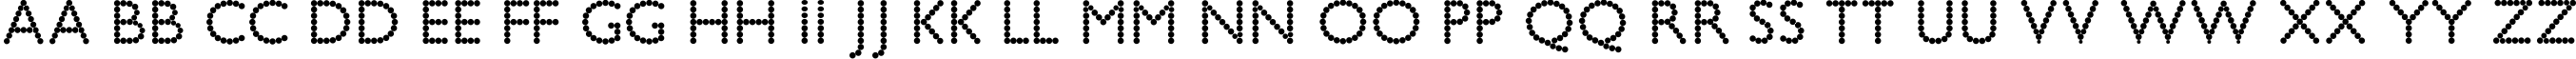 Пример написания английского алфавита шрифтом Bead Chain